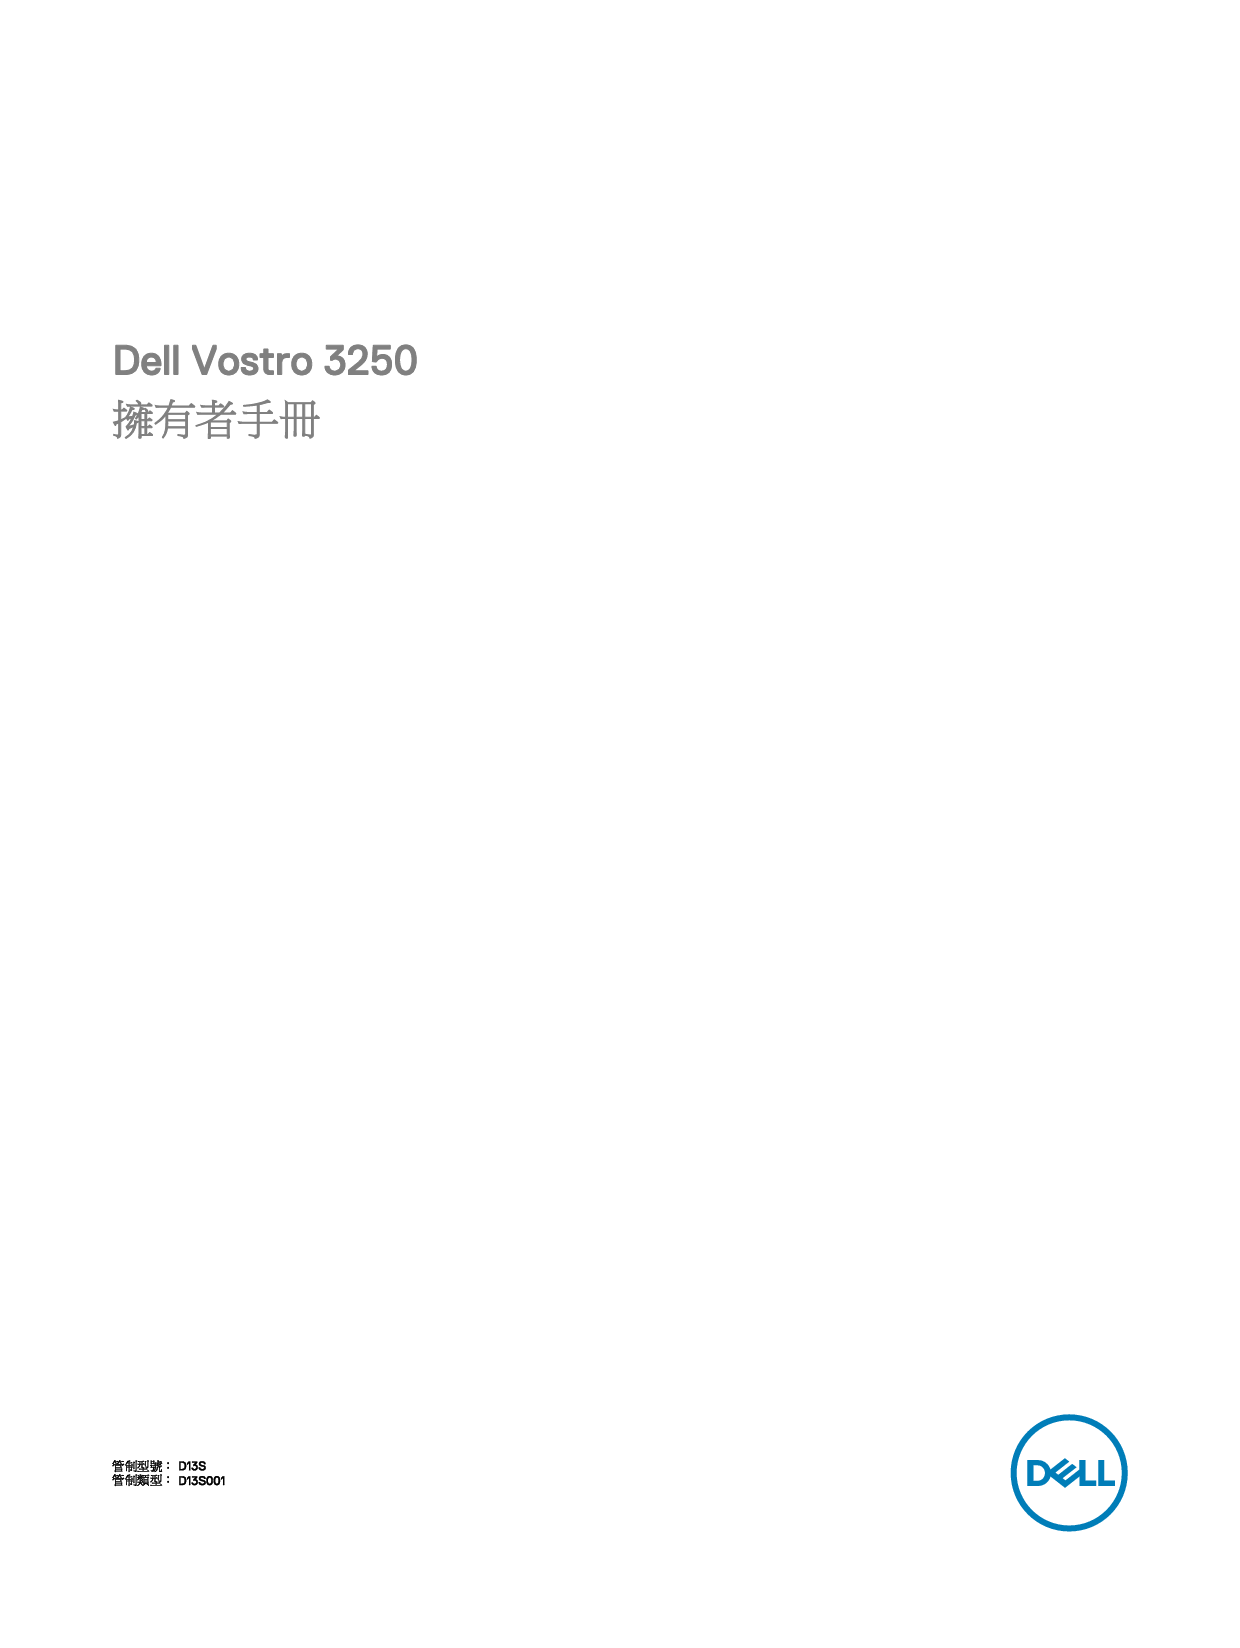 戴尔 Dell Vostro 3250 繁体 用户手册 封面